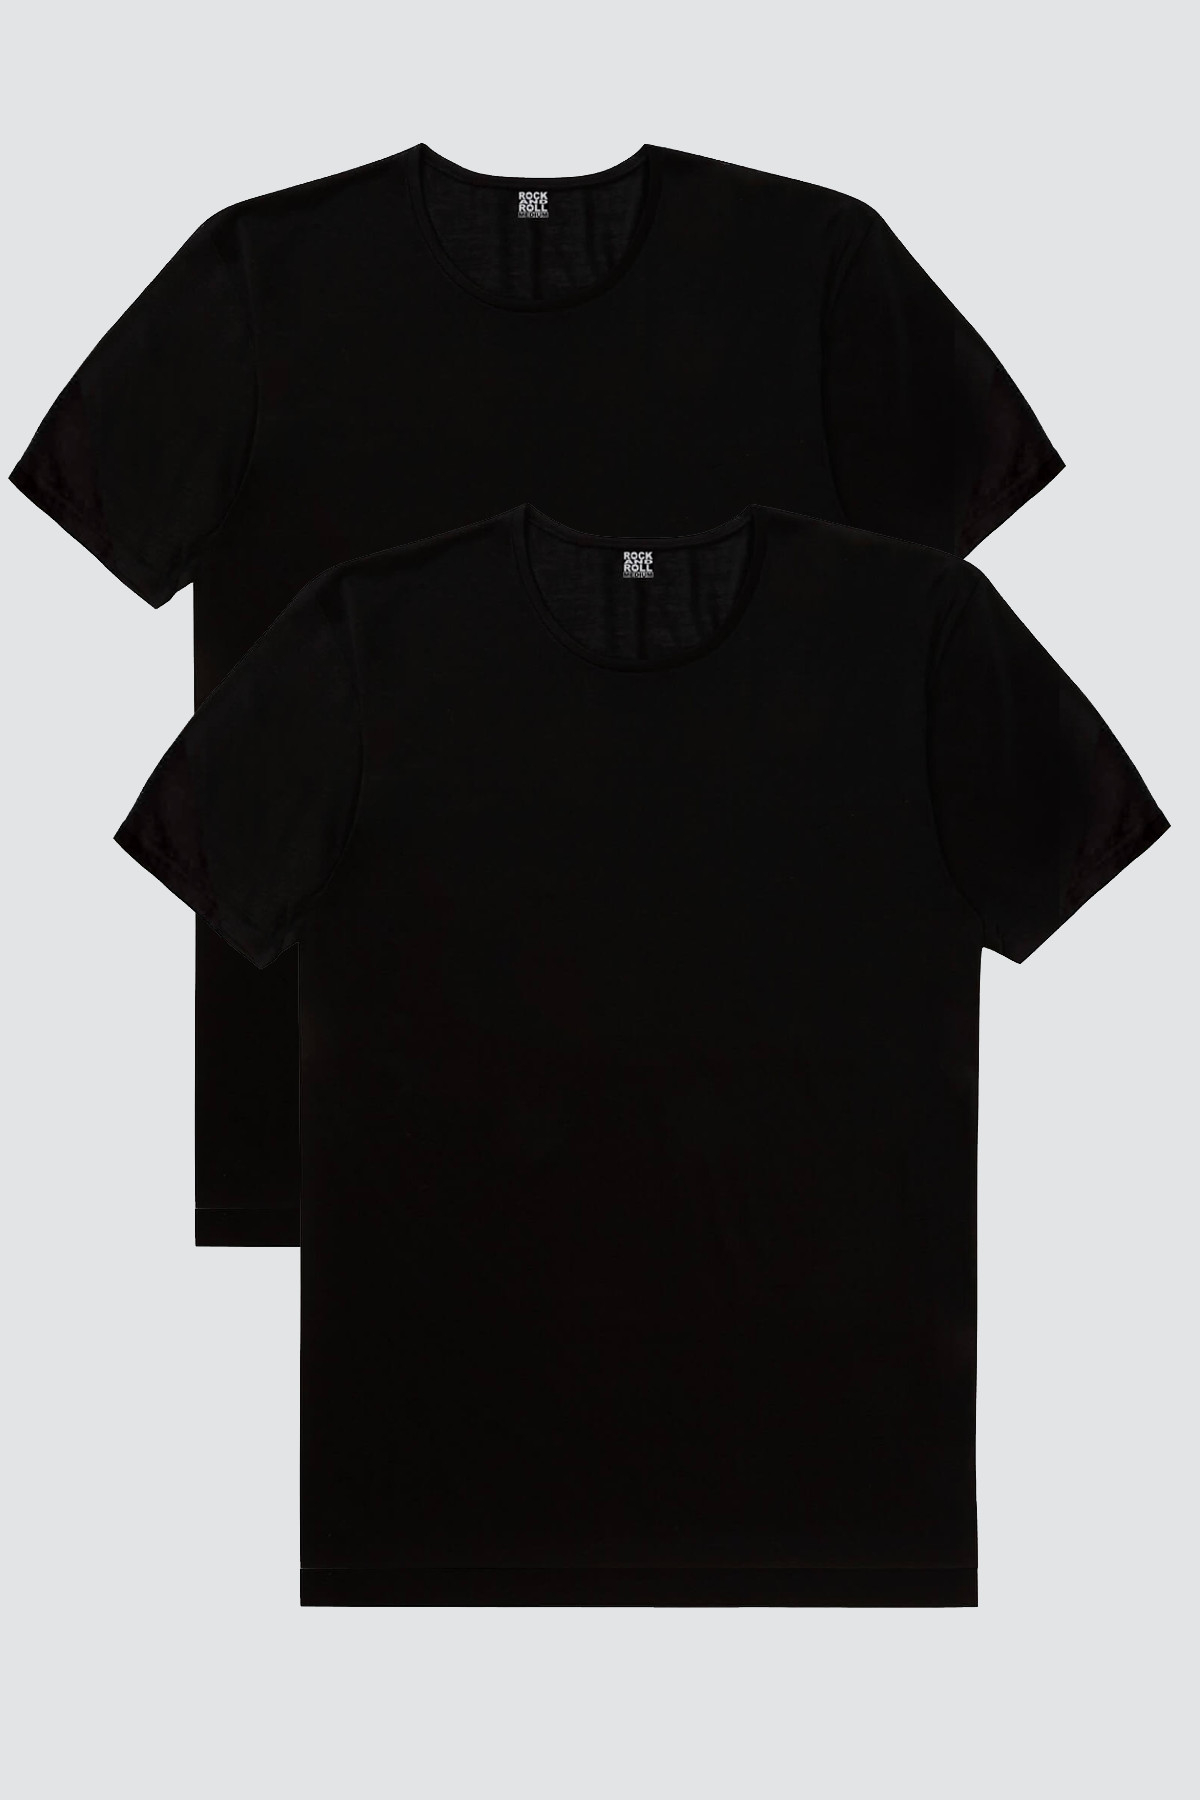 Düz, Baskısız Siyah Kadın 2'li Eko Paket T-shirt